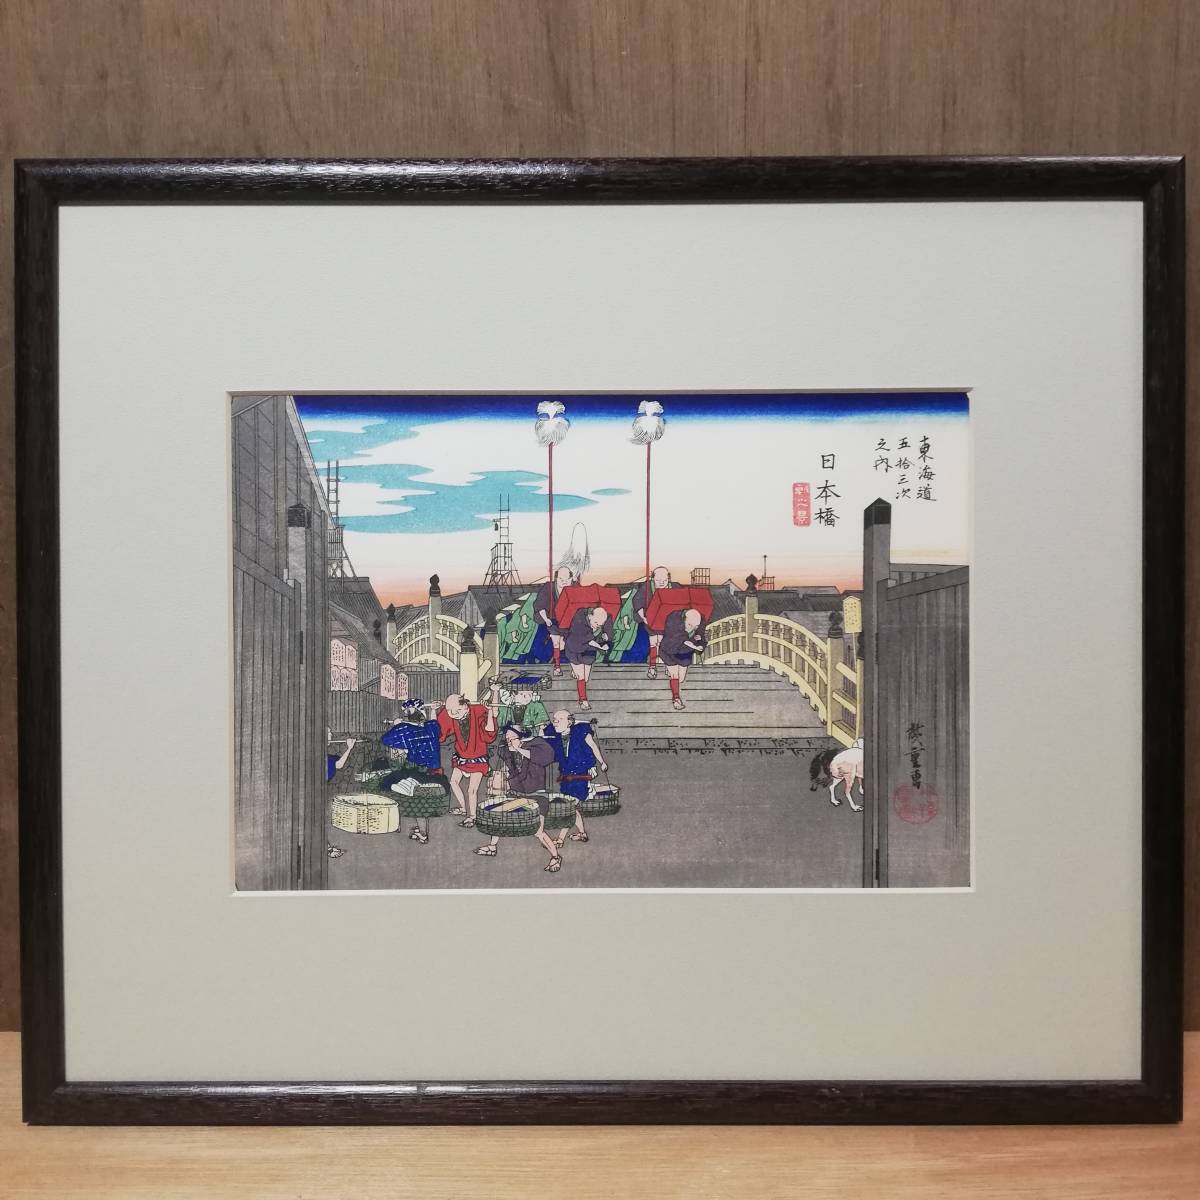 Utagawa Hiroshige / Dreiundfünfzig Stationen des Tokaido, Nihombashi, Holzschnitt, geschnitzt von Matsuda Torazo, gedruckt von Endo Tadao, authentisch, Box enthalten, Malerei, Ukiyo-e, Drucke, Gemälde berühmter Orte